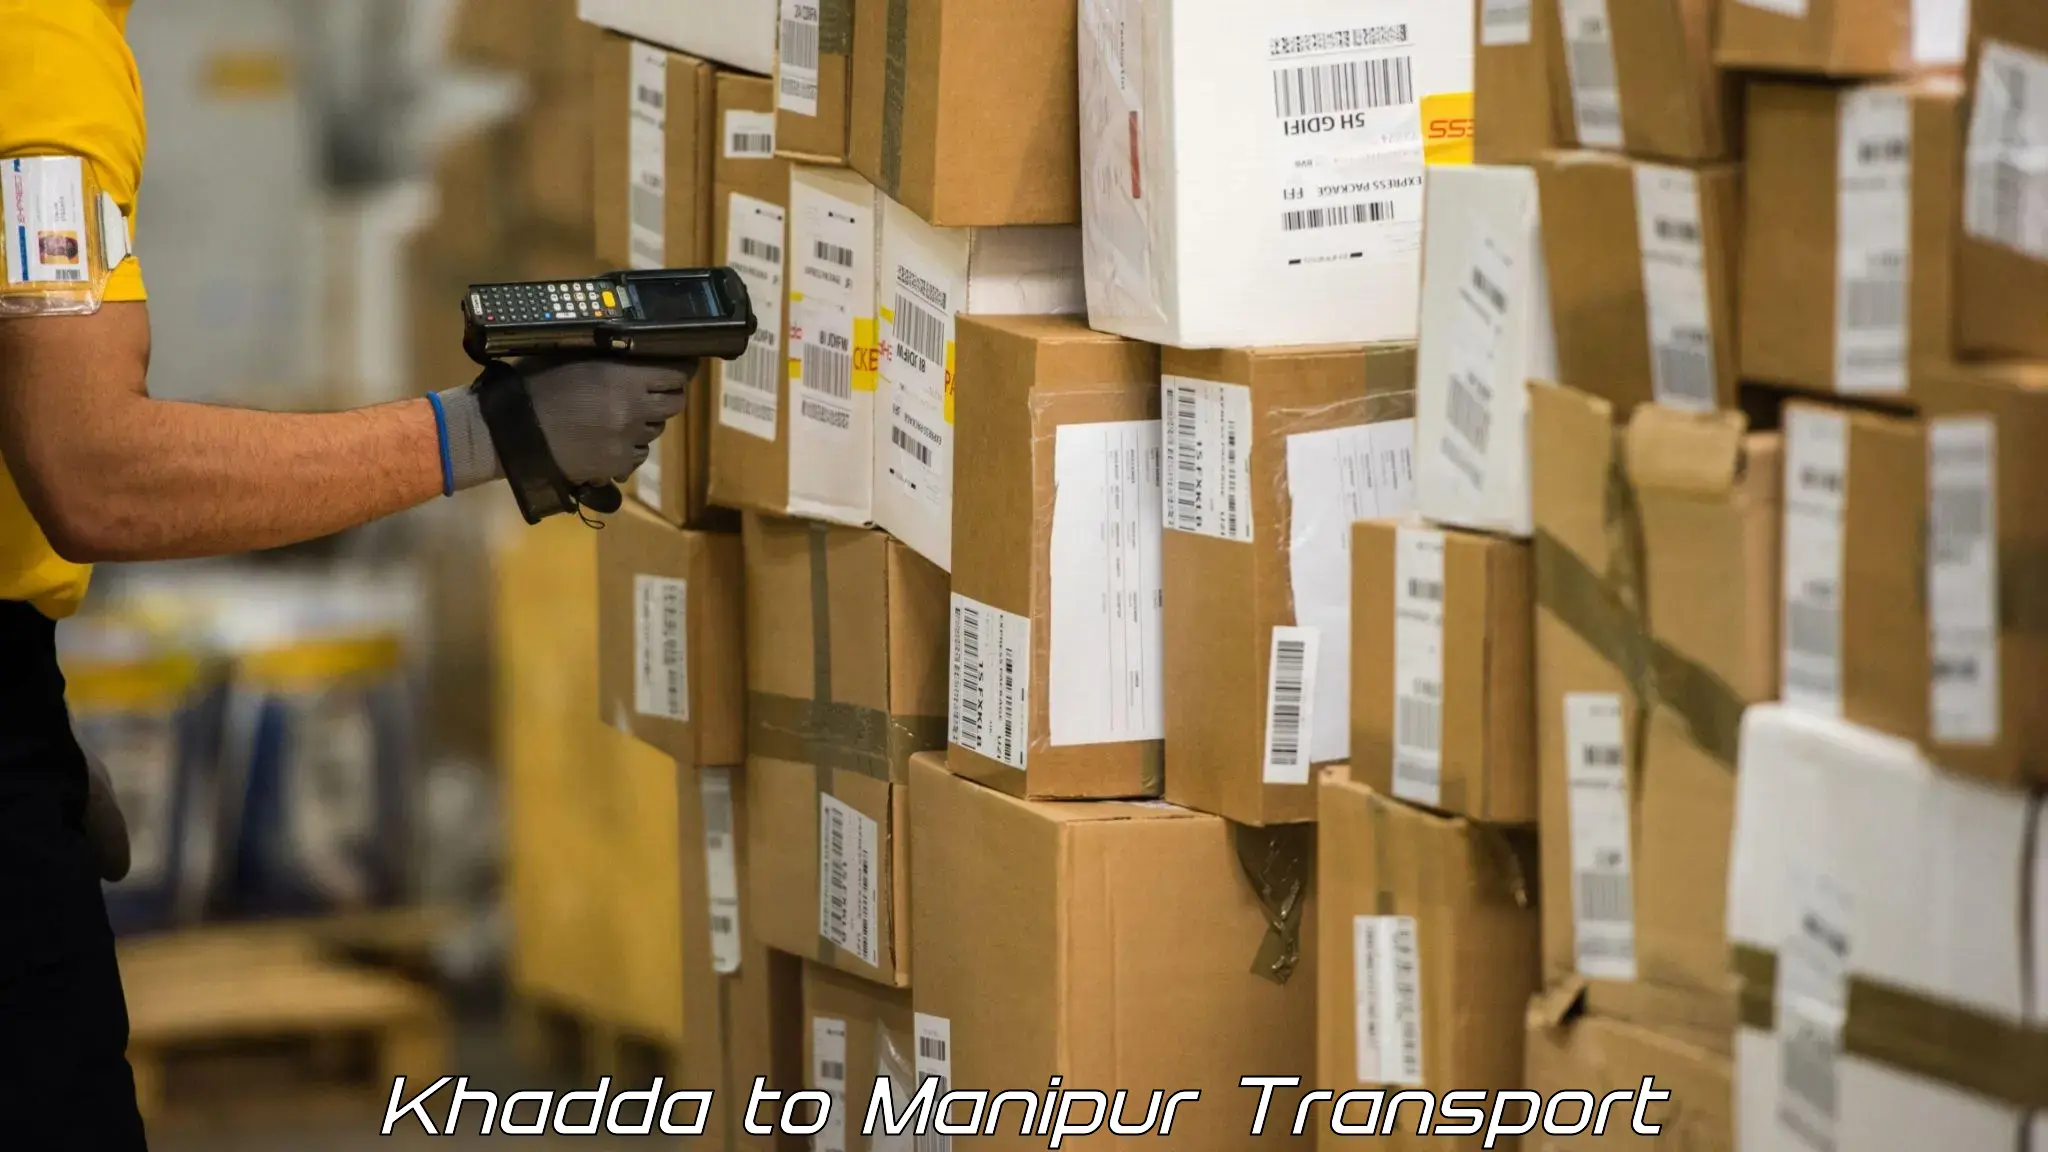 Two wheeler parcel service Khadda to Kanti